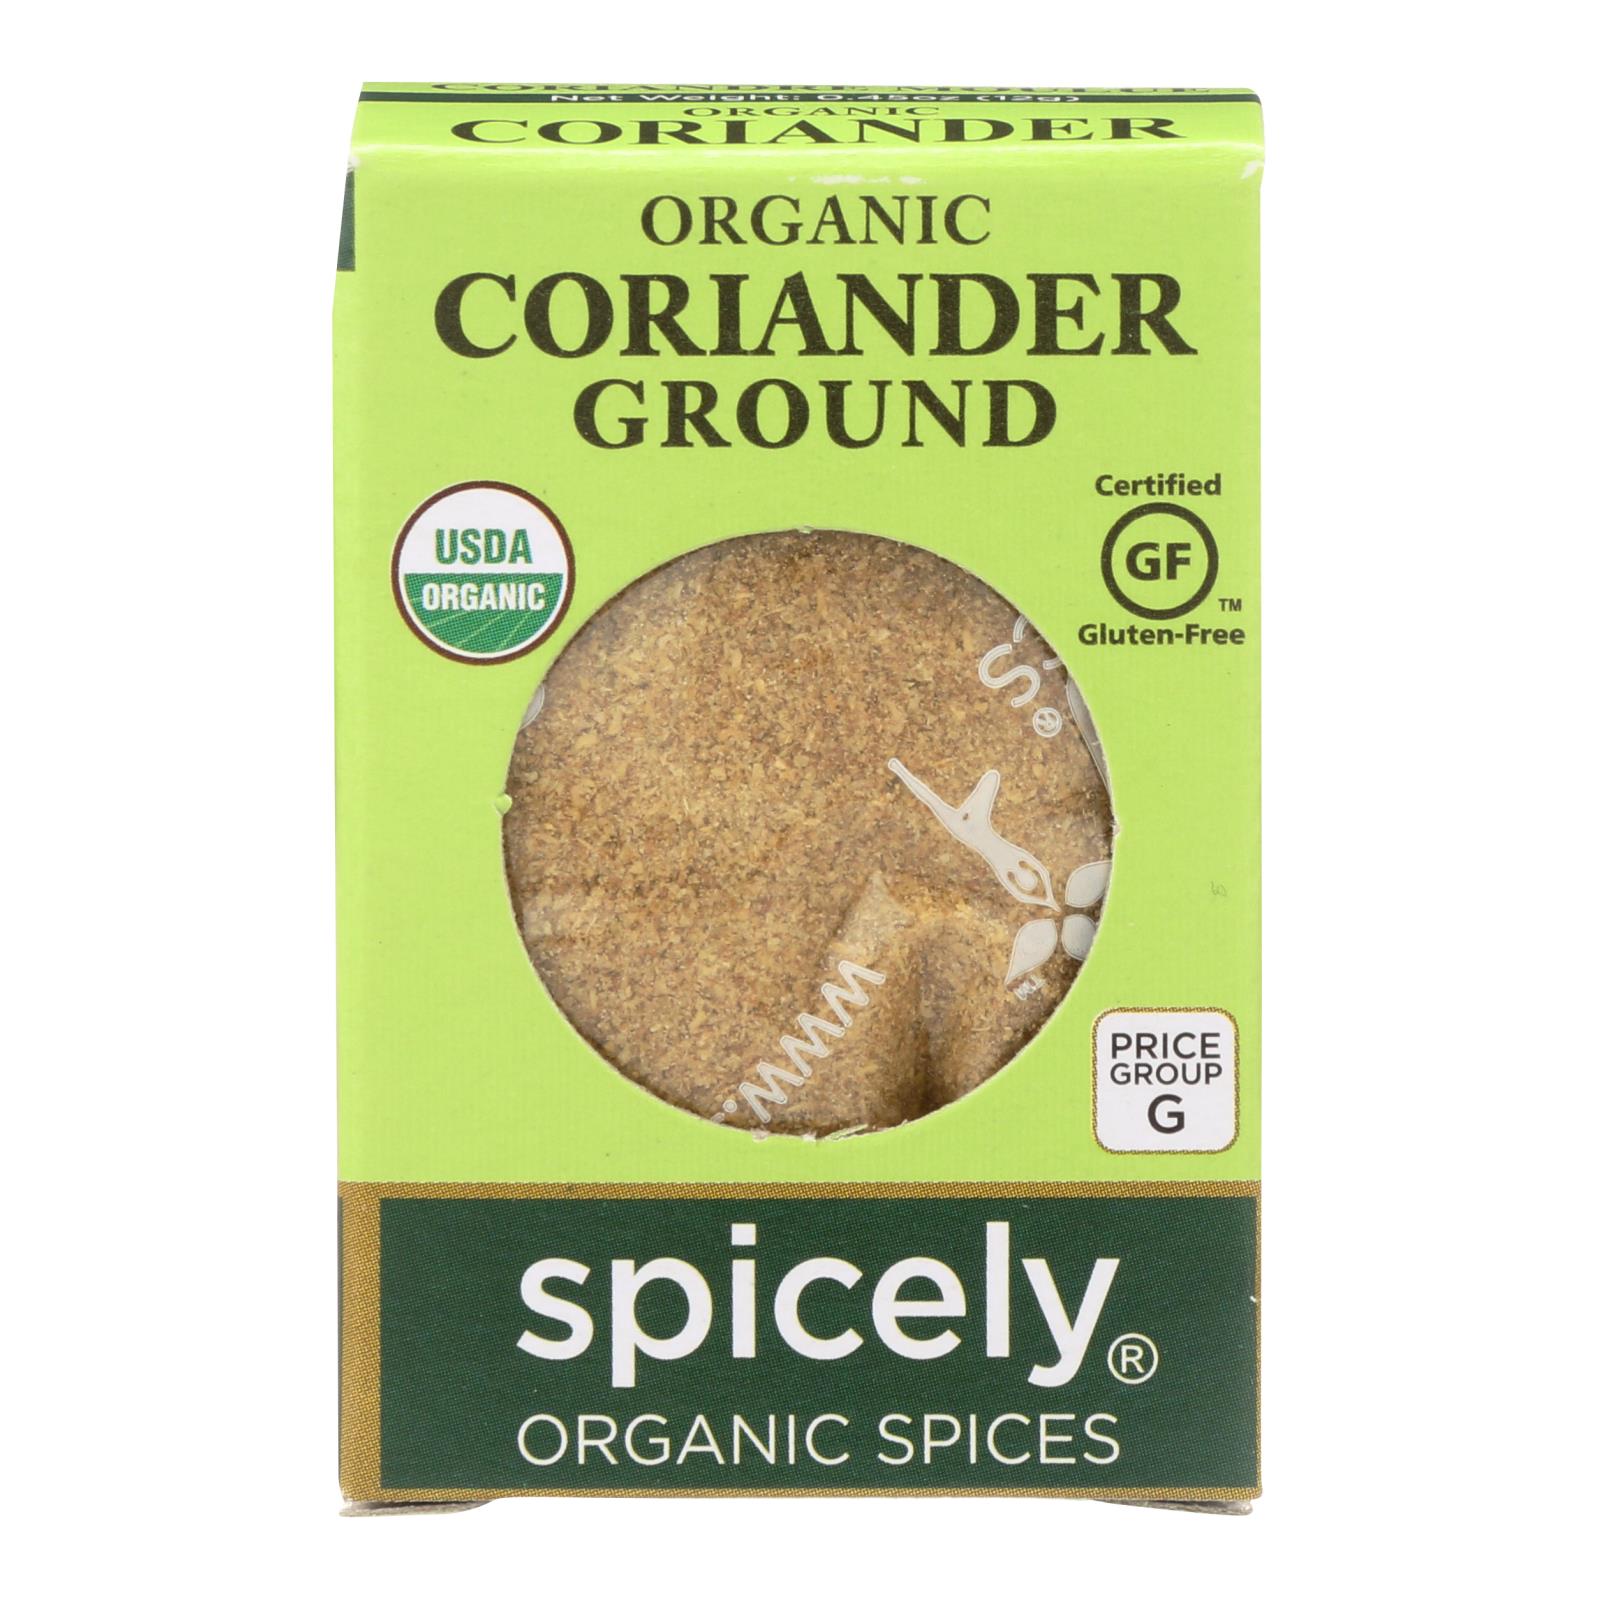 Spicely Organics - Organic Coriander - Ground - 6개 묶음상품 - 0.45 oz.